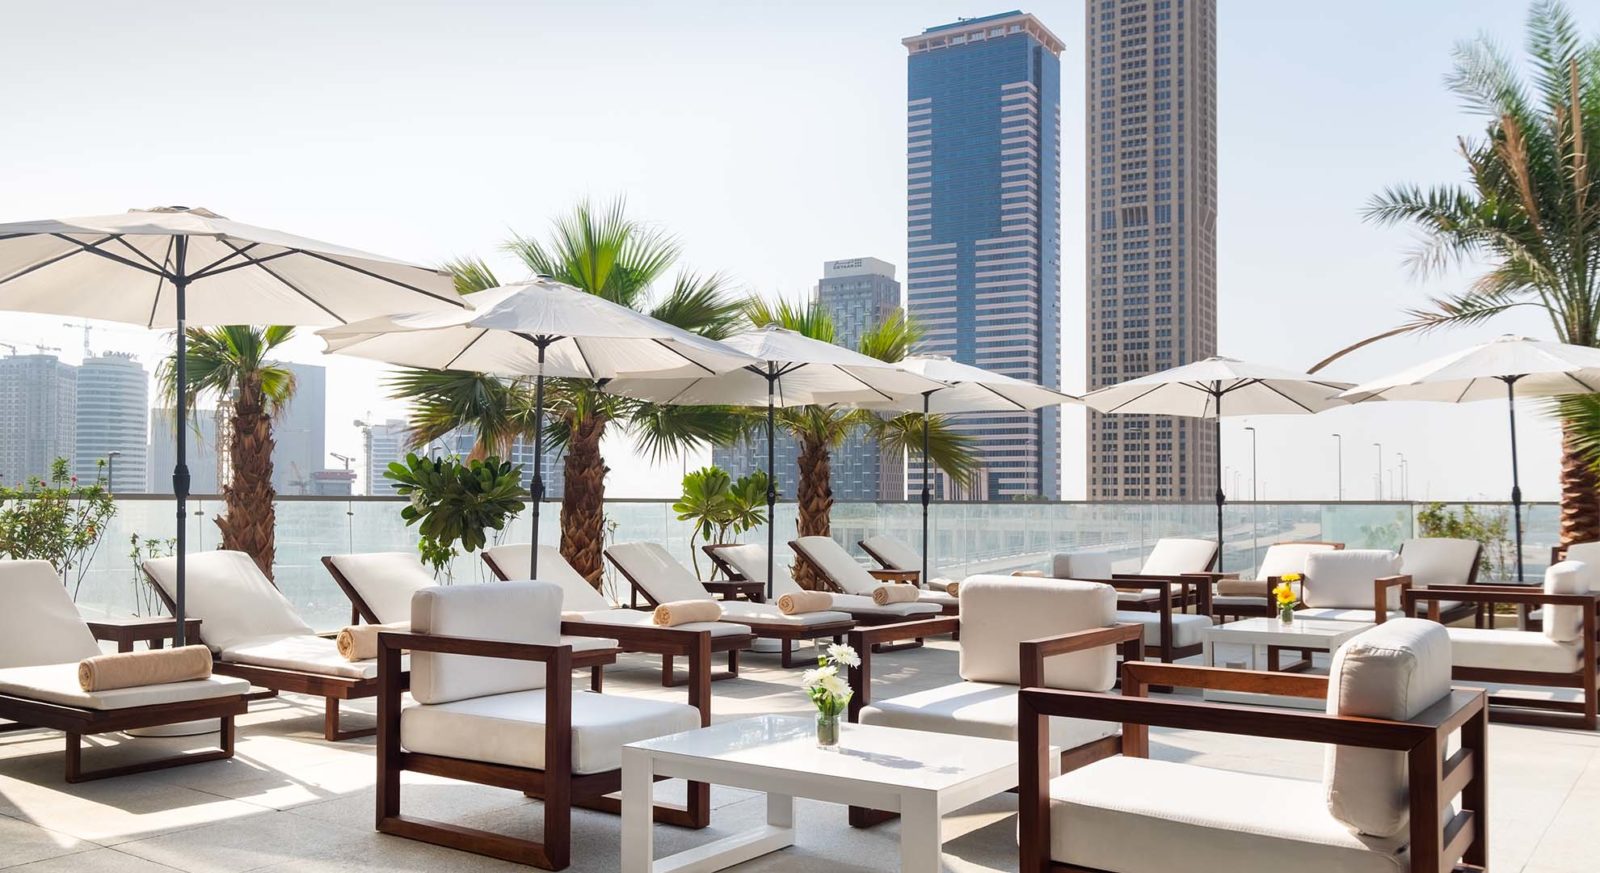 Park Regis Business Bay Dubai